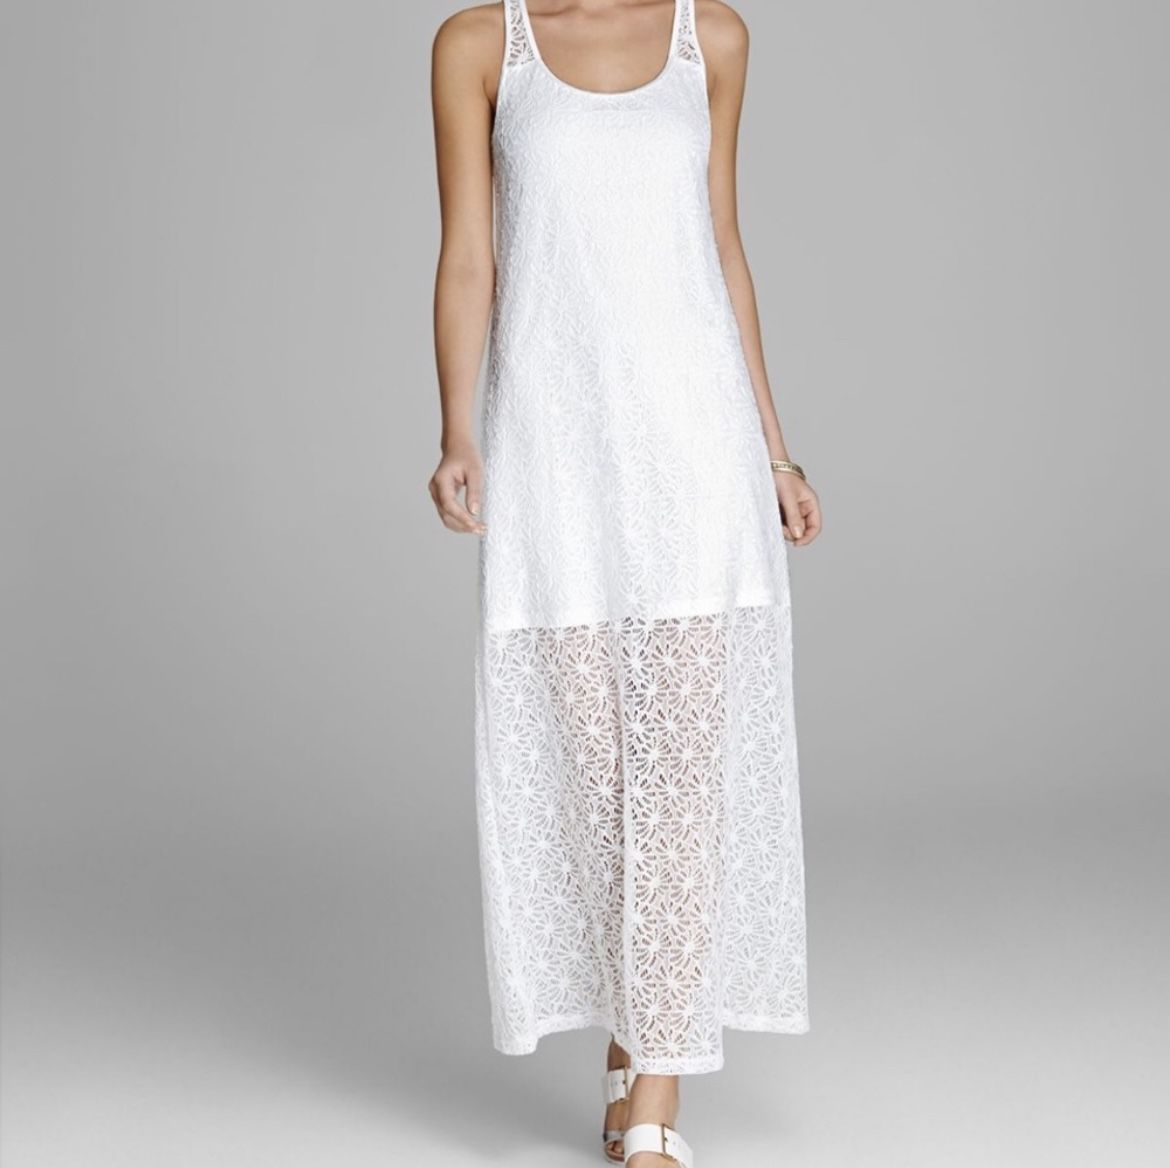 Tommy Bahama White Lace Maxi Dress - Size Medium